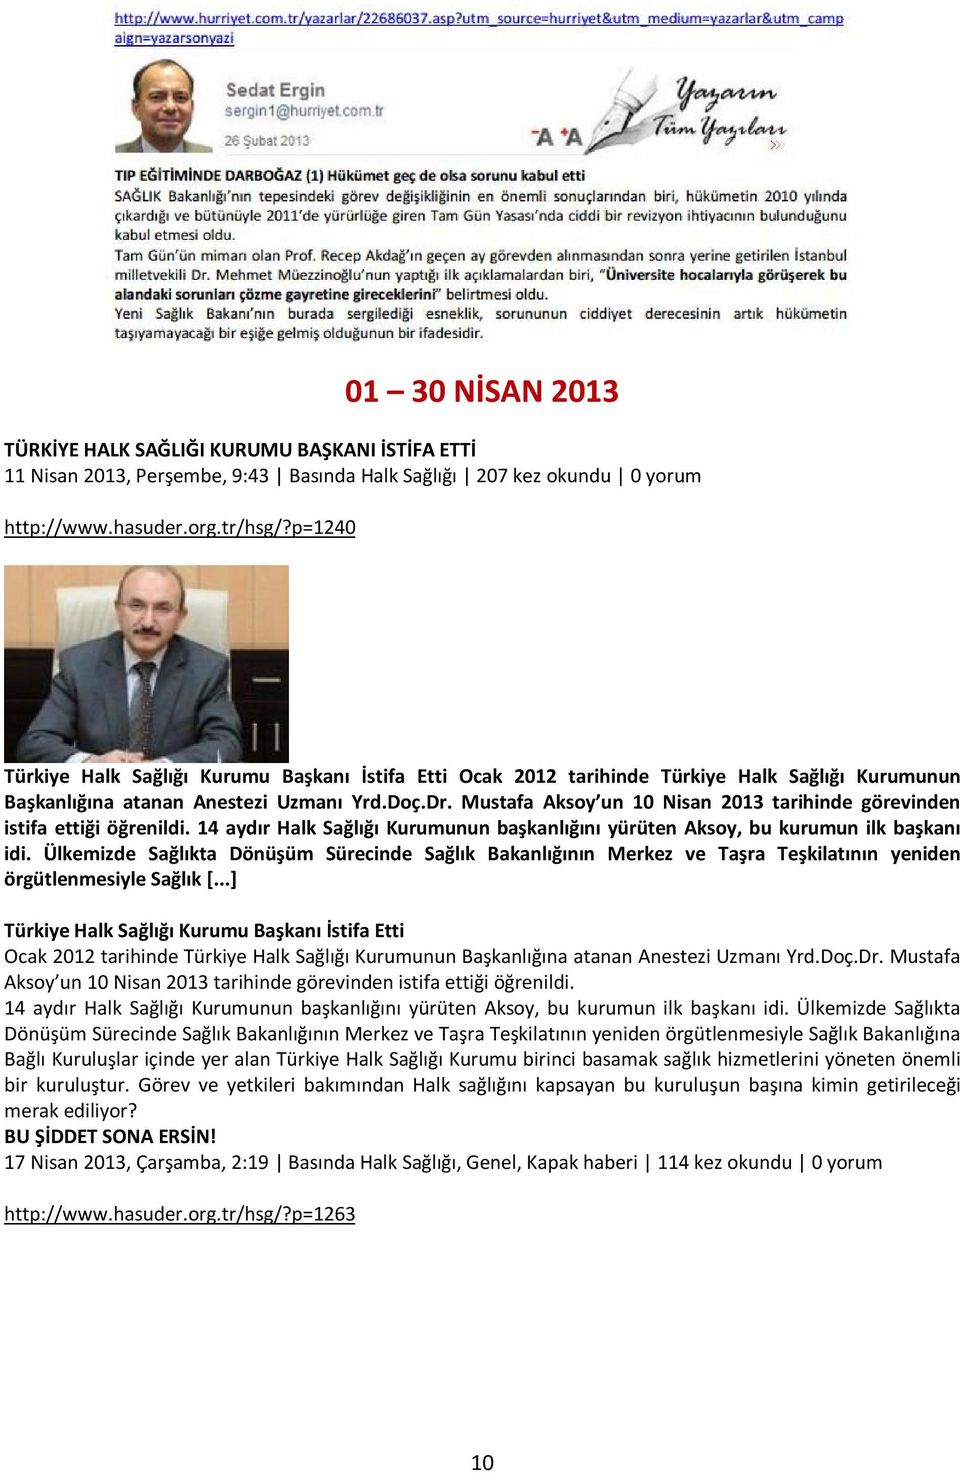 Mustafa Aksoy un 10 Nisan 2013 tarihinde görevinden istifa ettiği öğrenildi. 14 aydır Halk Sağlığı Kurumunun başkanlığını yürüten Aksoy, bu kurumun ilk başkanı idi.